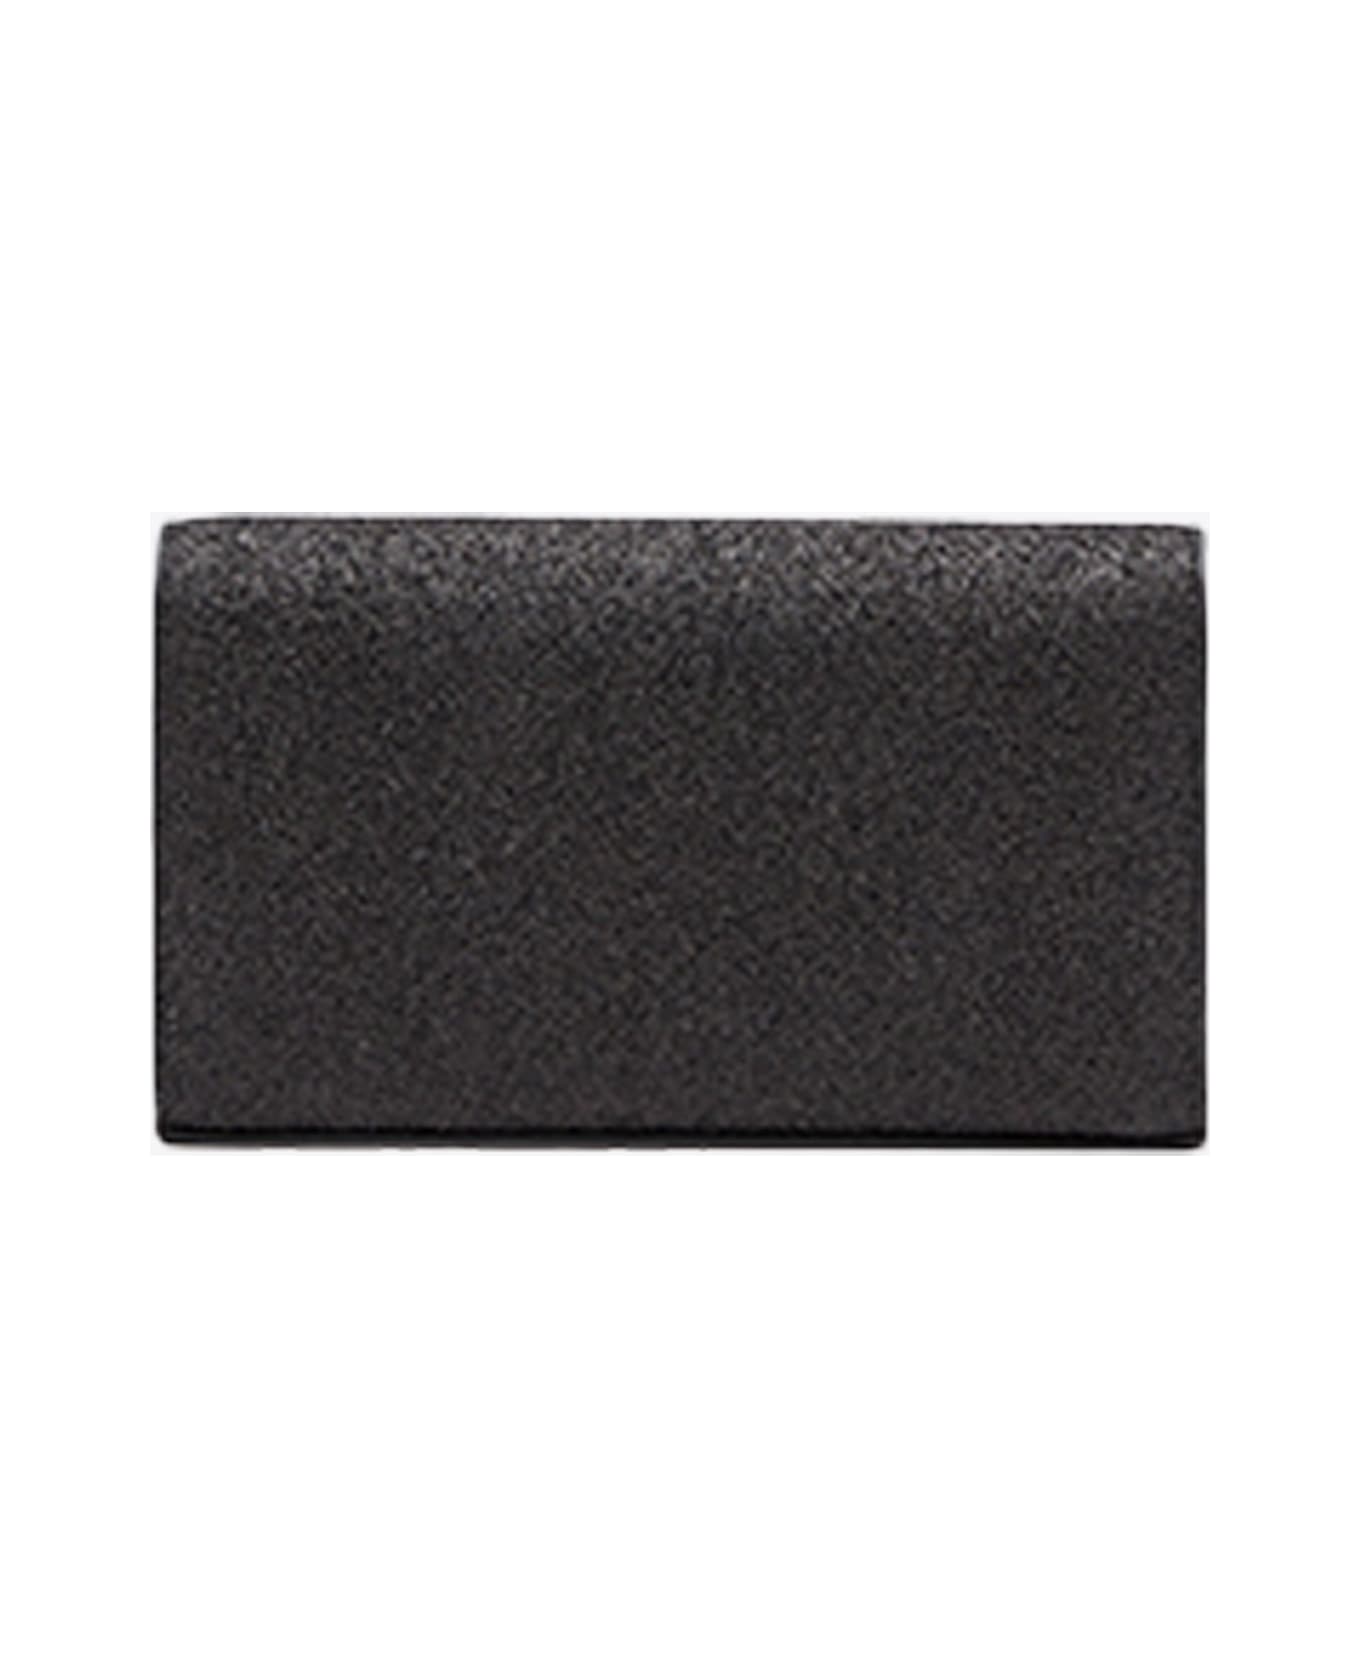 Diesel 1dr 1dr Wallet Strap Sparkly Black Purse With Shoulder Strap - 1dr Wallet Strap - black 財布